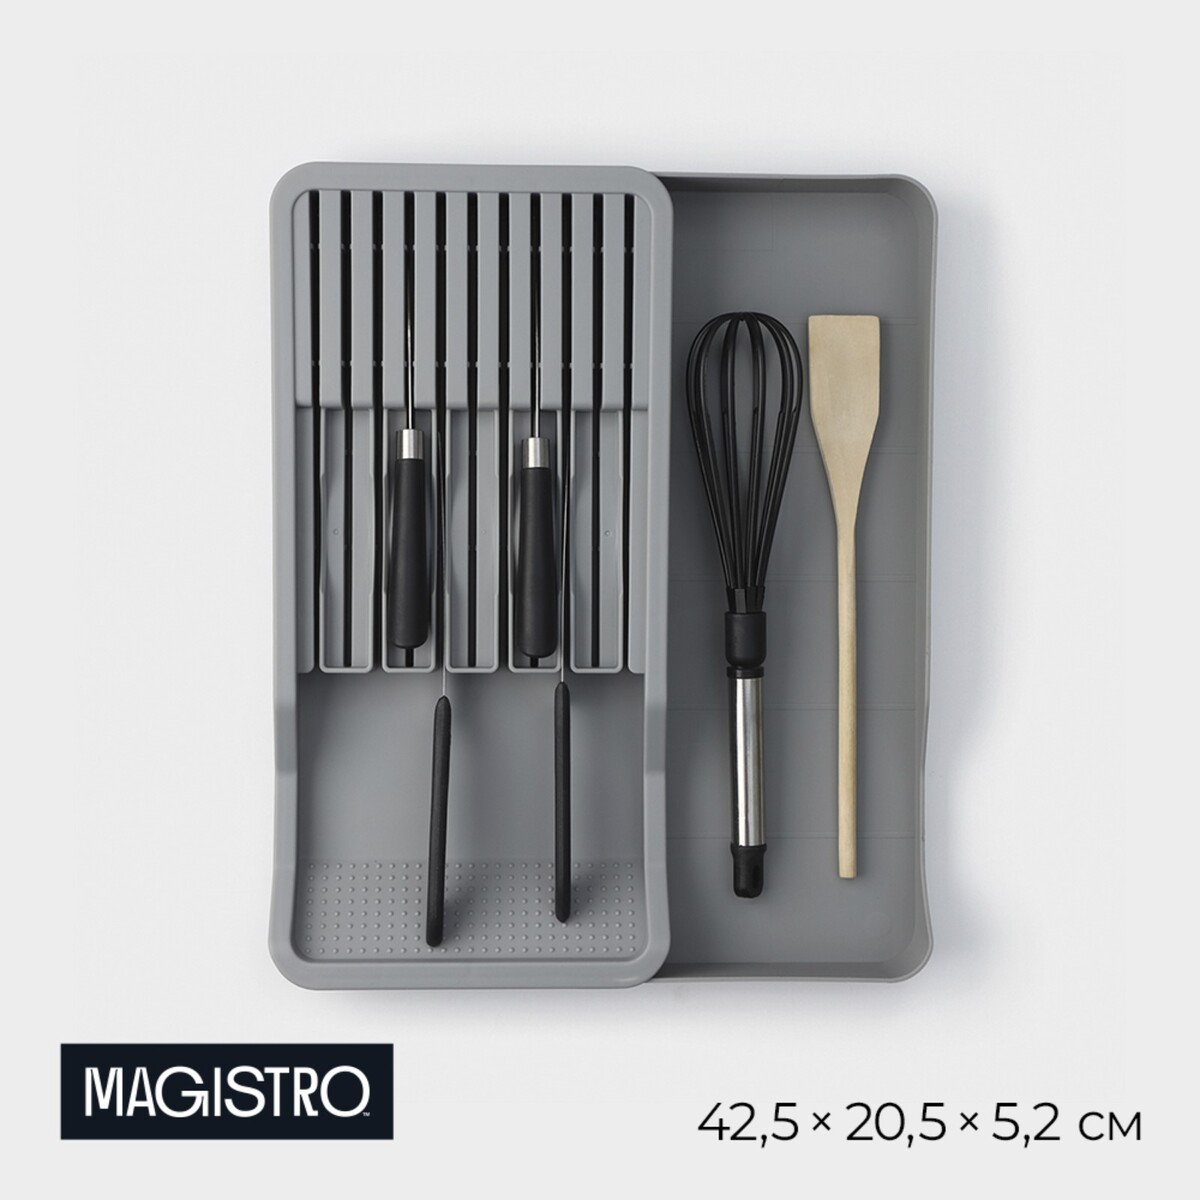 Подставка для кухонных приборов magistro harm, 42,5×20,5×5,2 см, раздвижная, цвет серый подставка для ножей и столовых приборов magistro